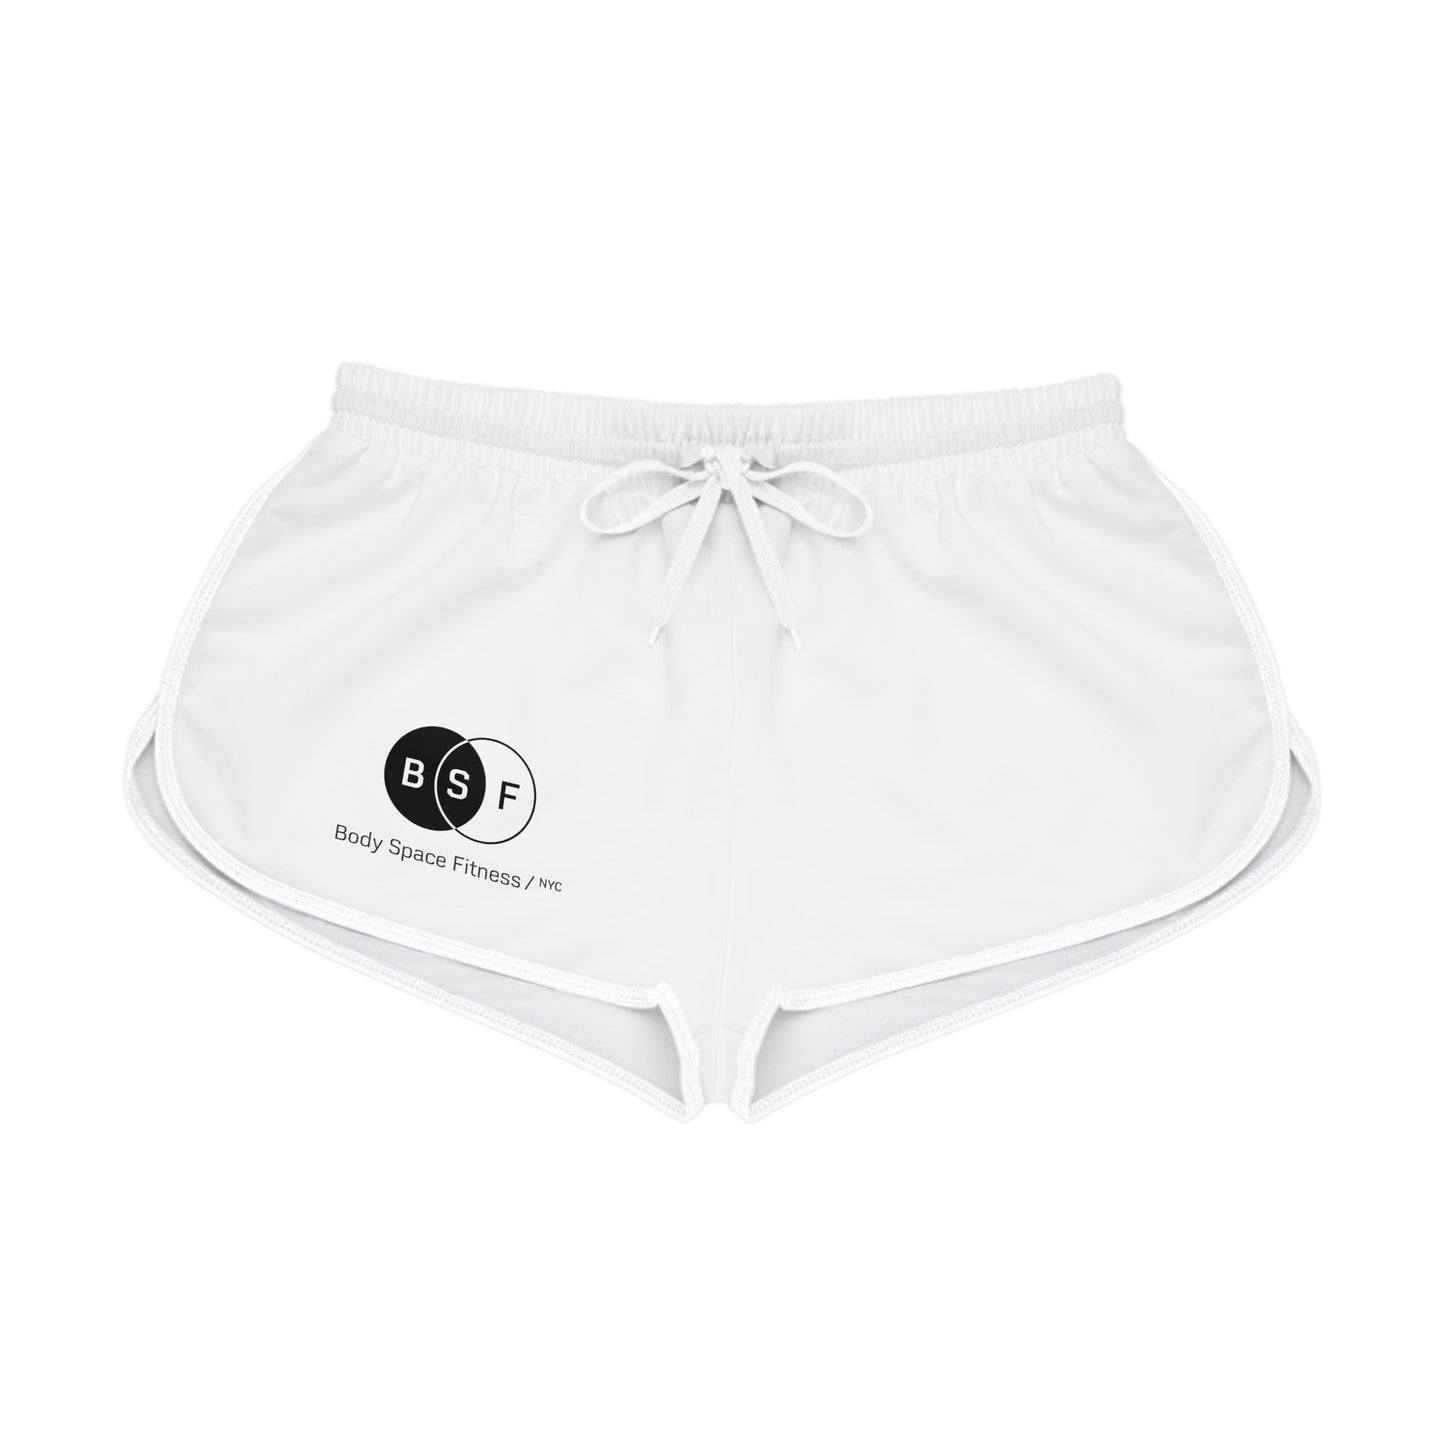 Women's Relaxed Shorts (AOP)